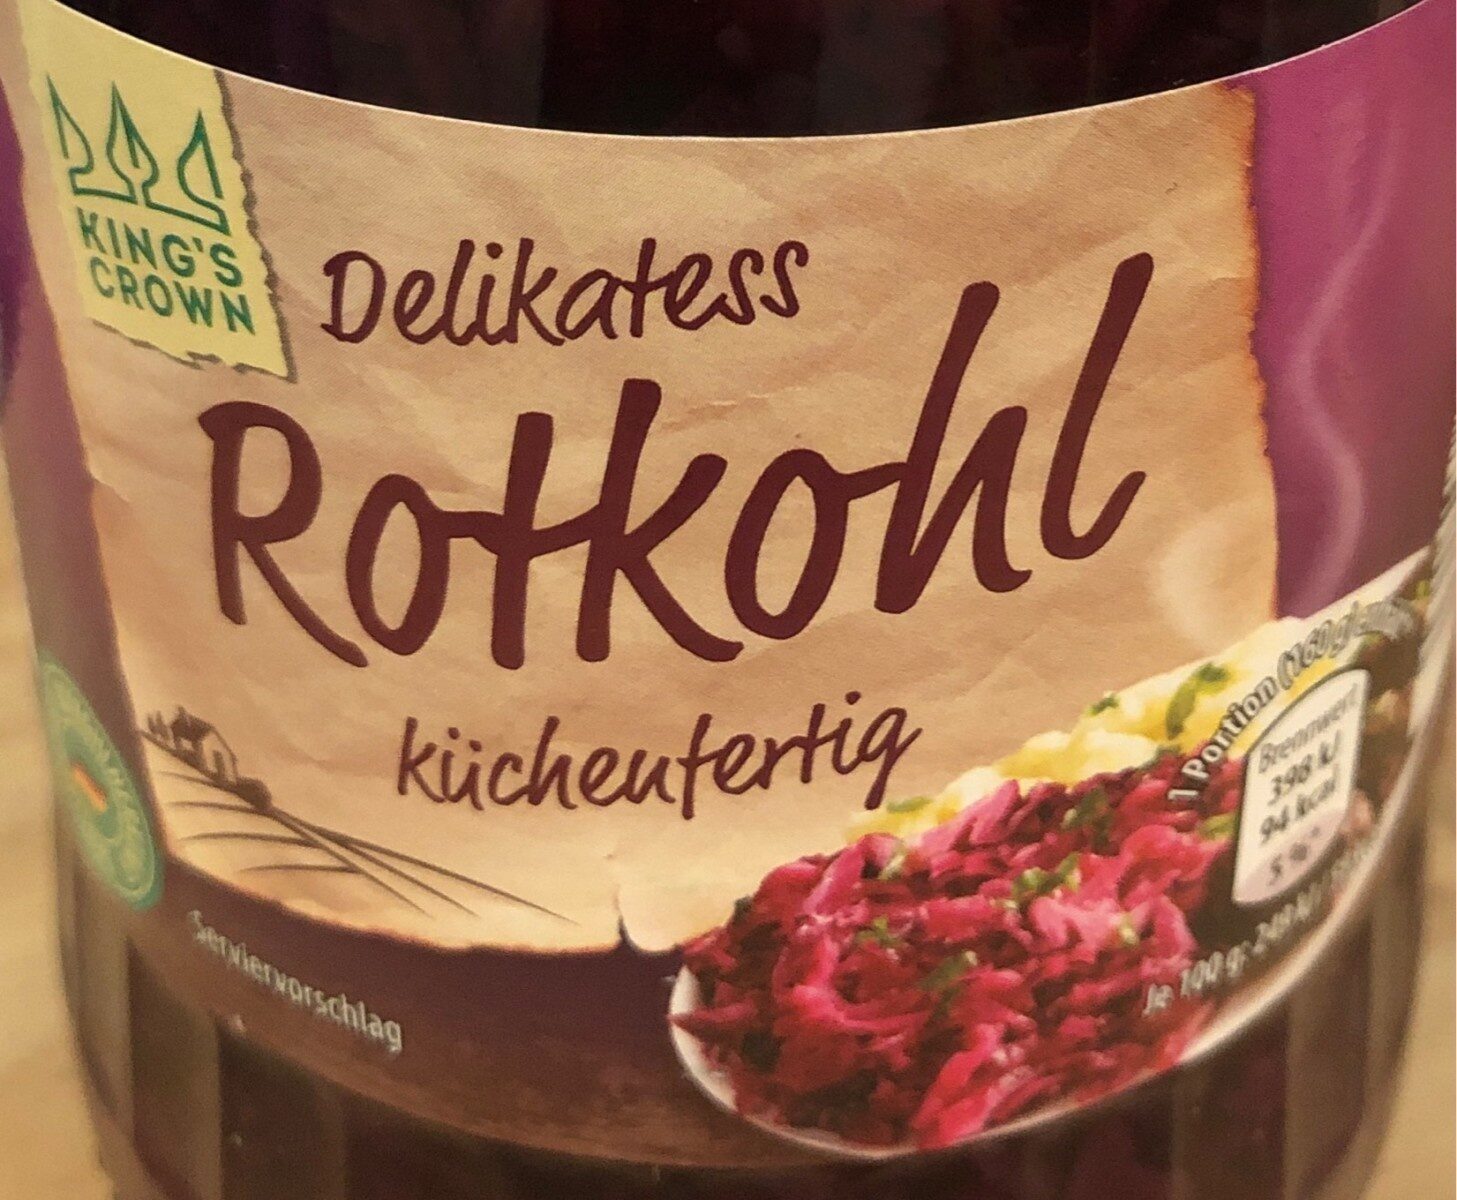 Delikatess Rotkohl - Product - de